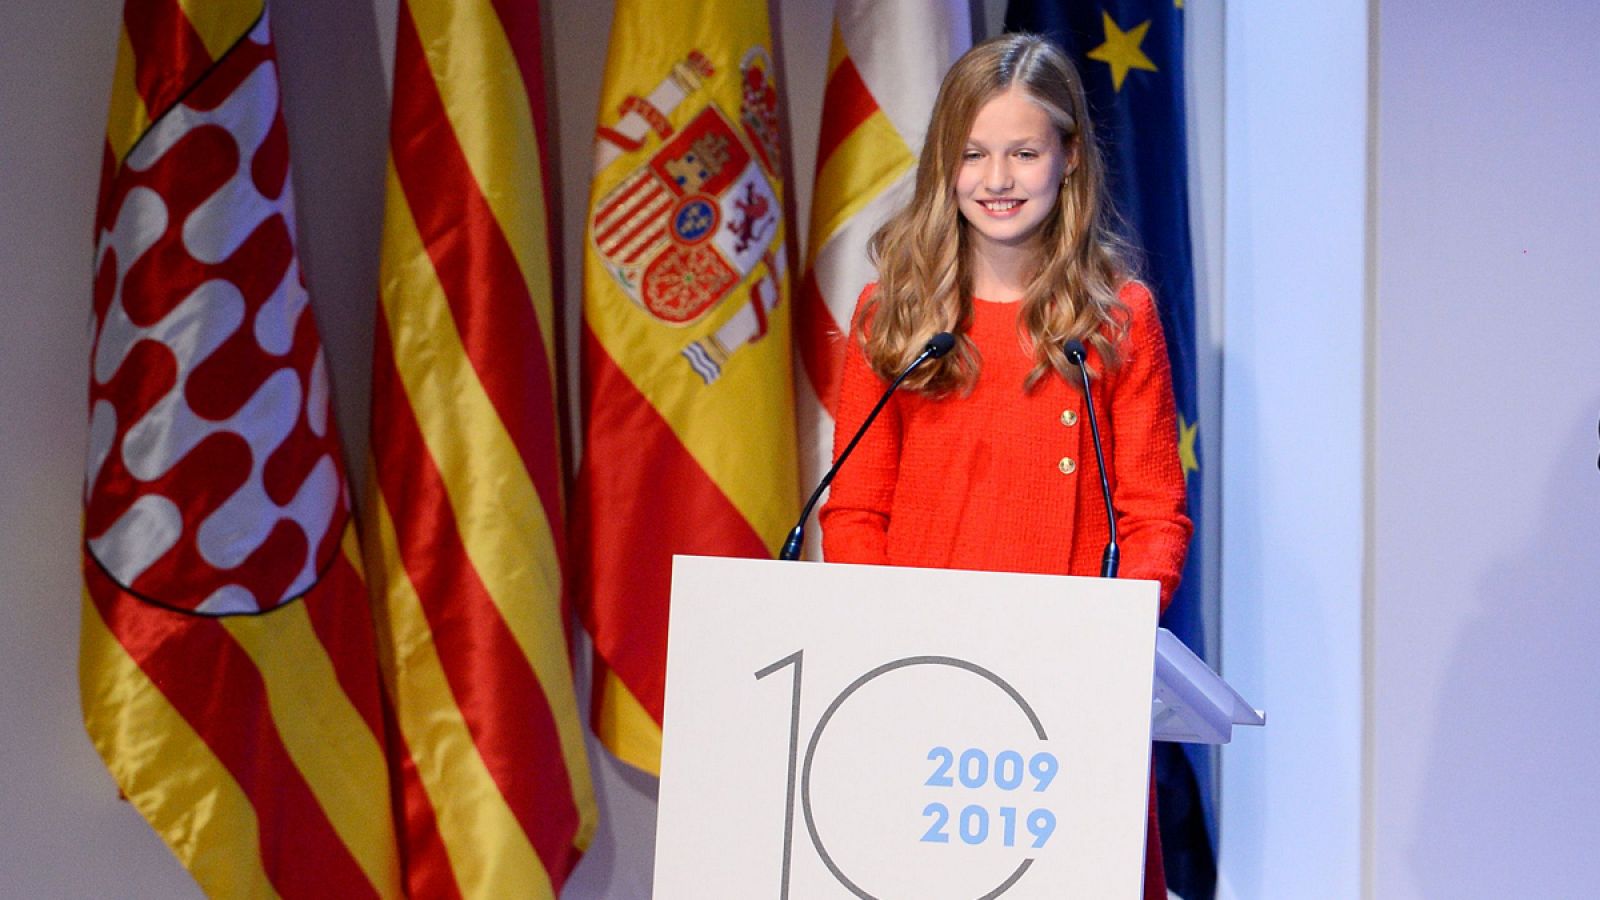 La princesa Leonor: "Cataluña siempre tendrá un lugar especial en mi corazón"